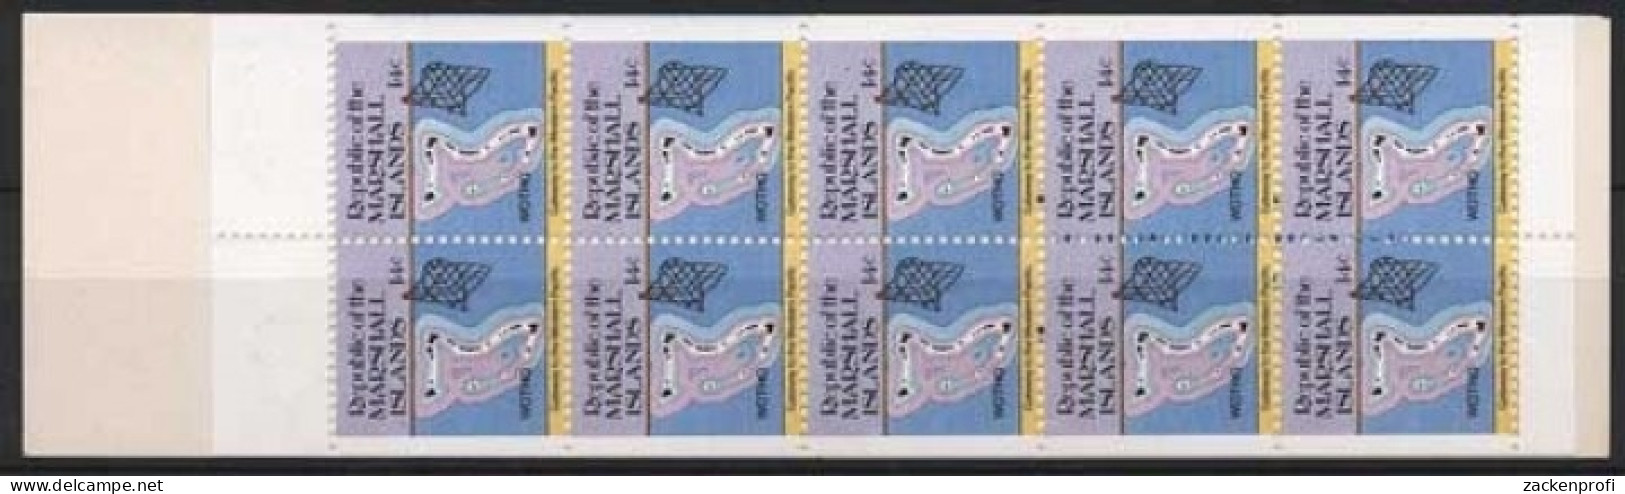 Marshall-Inseln 1985 Freimarken: Inselkarten 40 MH Postfrisch (C21495) - Marshallinseln